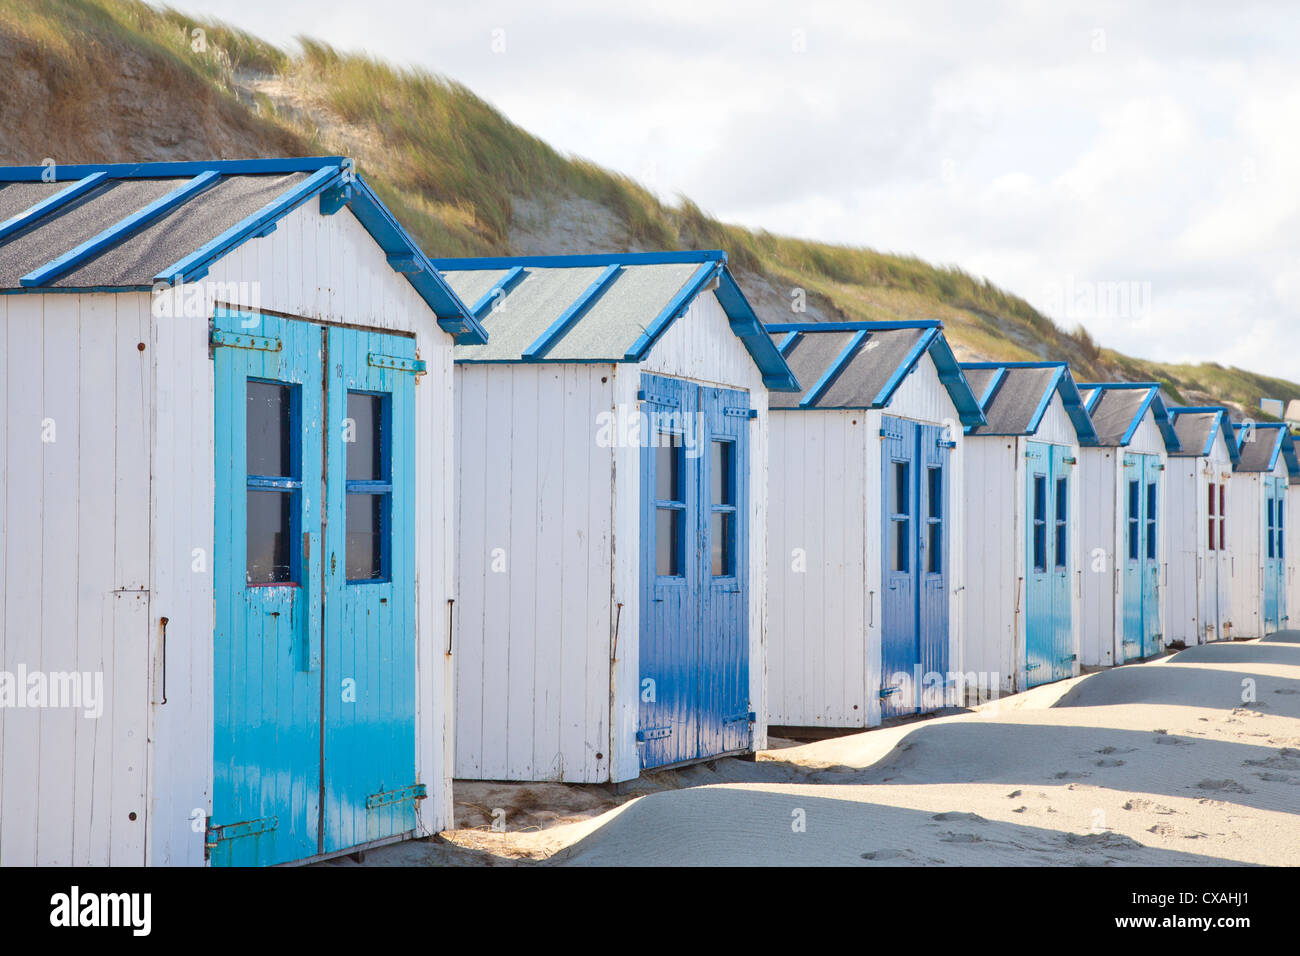 Dutch petites maisons sur plage de De Koog Texel, Pays-Bas Banque D'Images